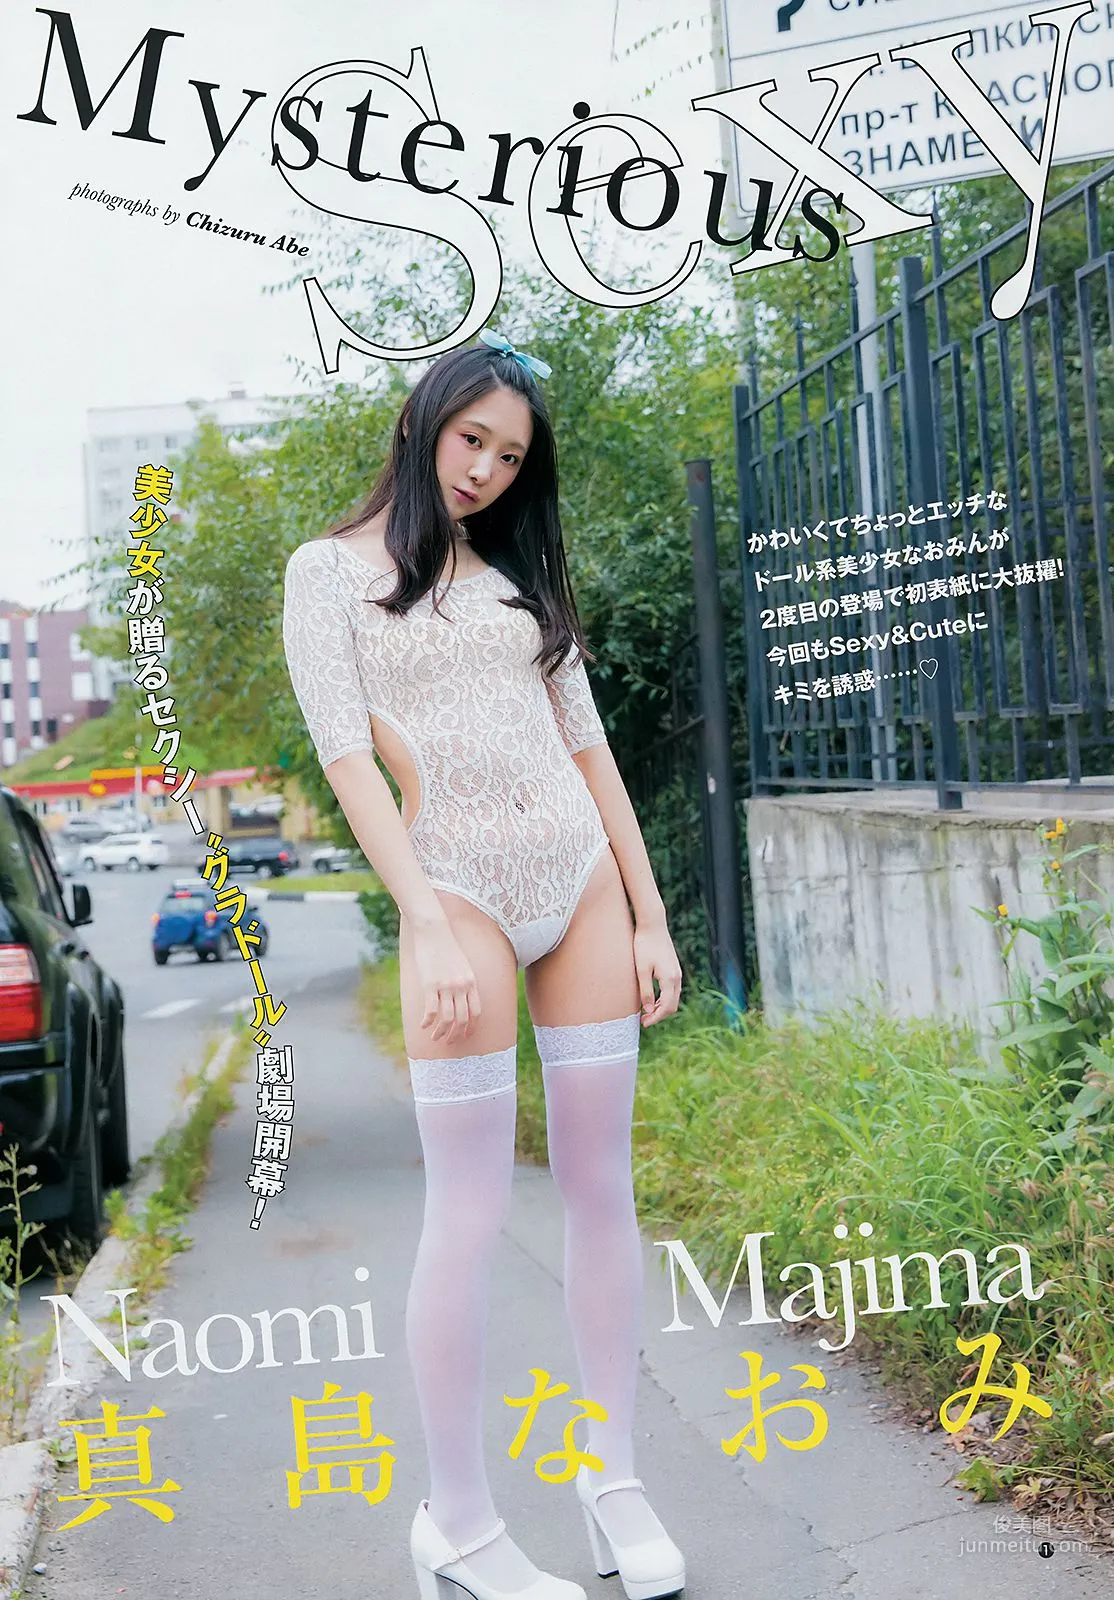 真島なおみ 華村あすか [Weekly Young Jump] 2018年No.44 写真杂志2